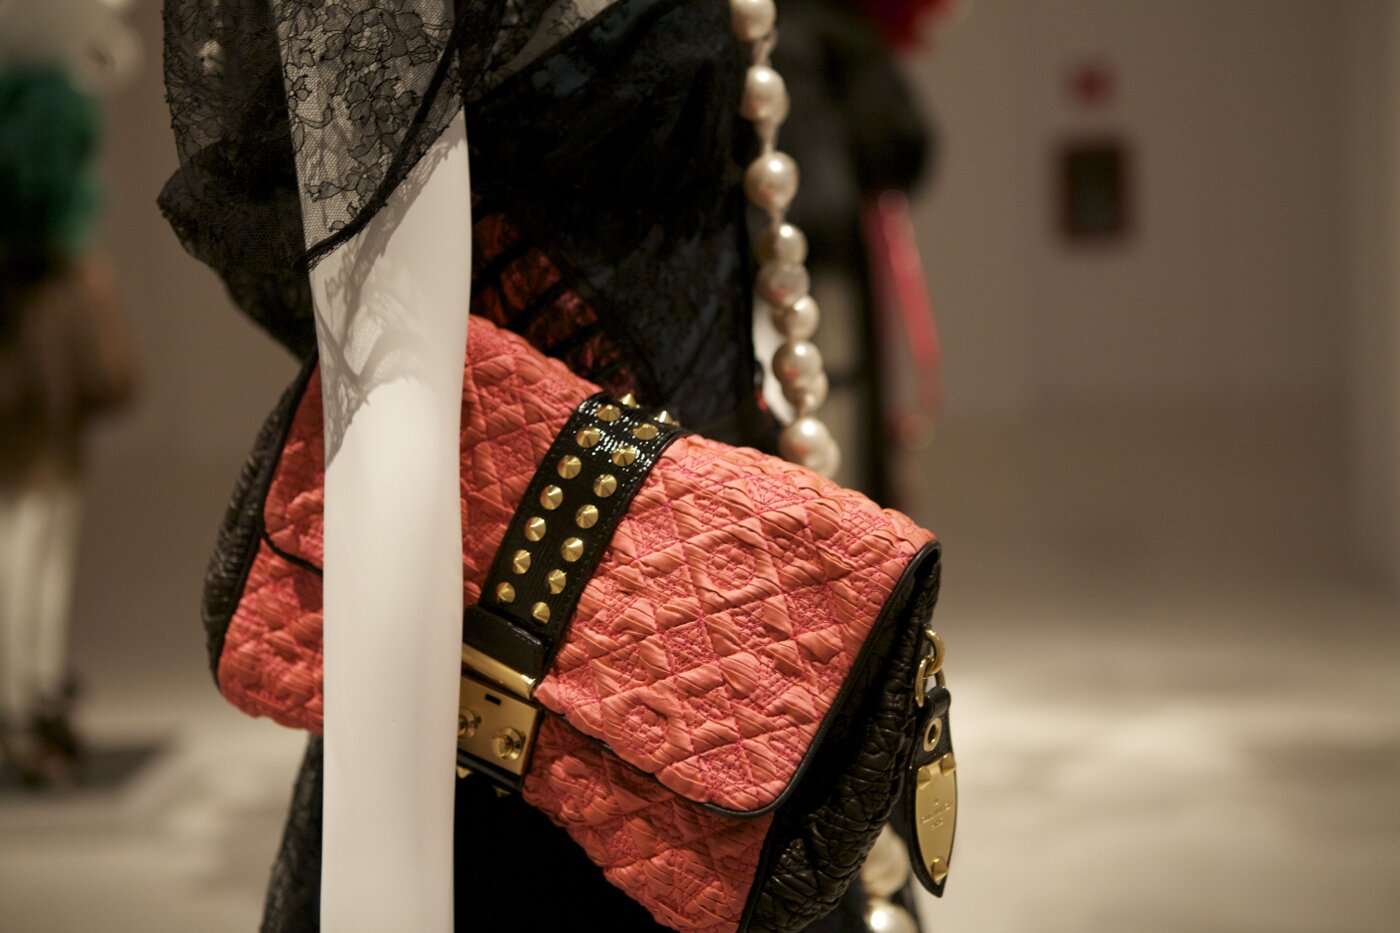 Katie Chutzpah: Louis Vuitton-Marc Jacobs Exhibition Launches in Paris at  Musée des Arts Décoratifs